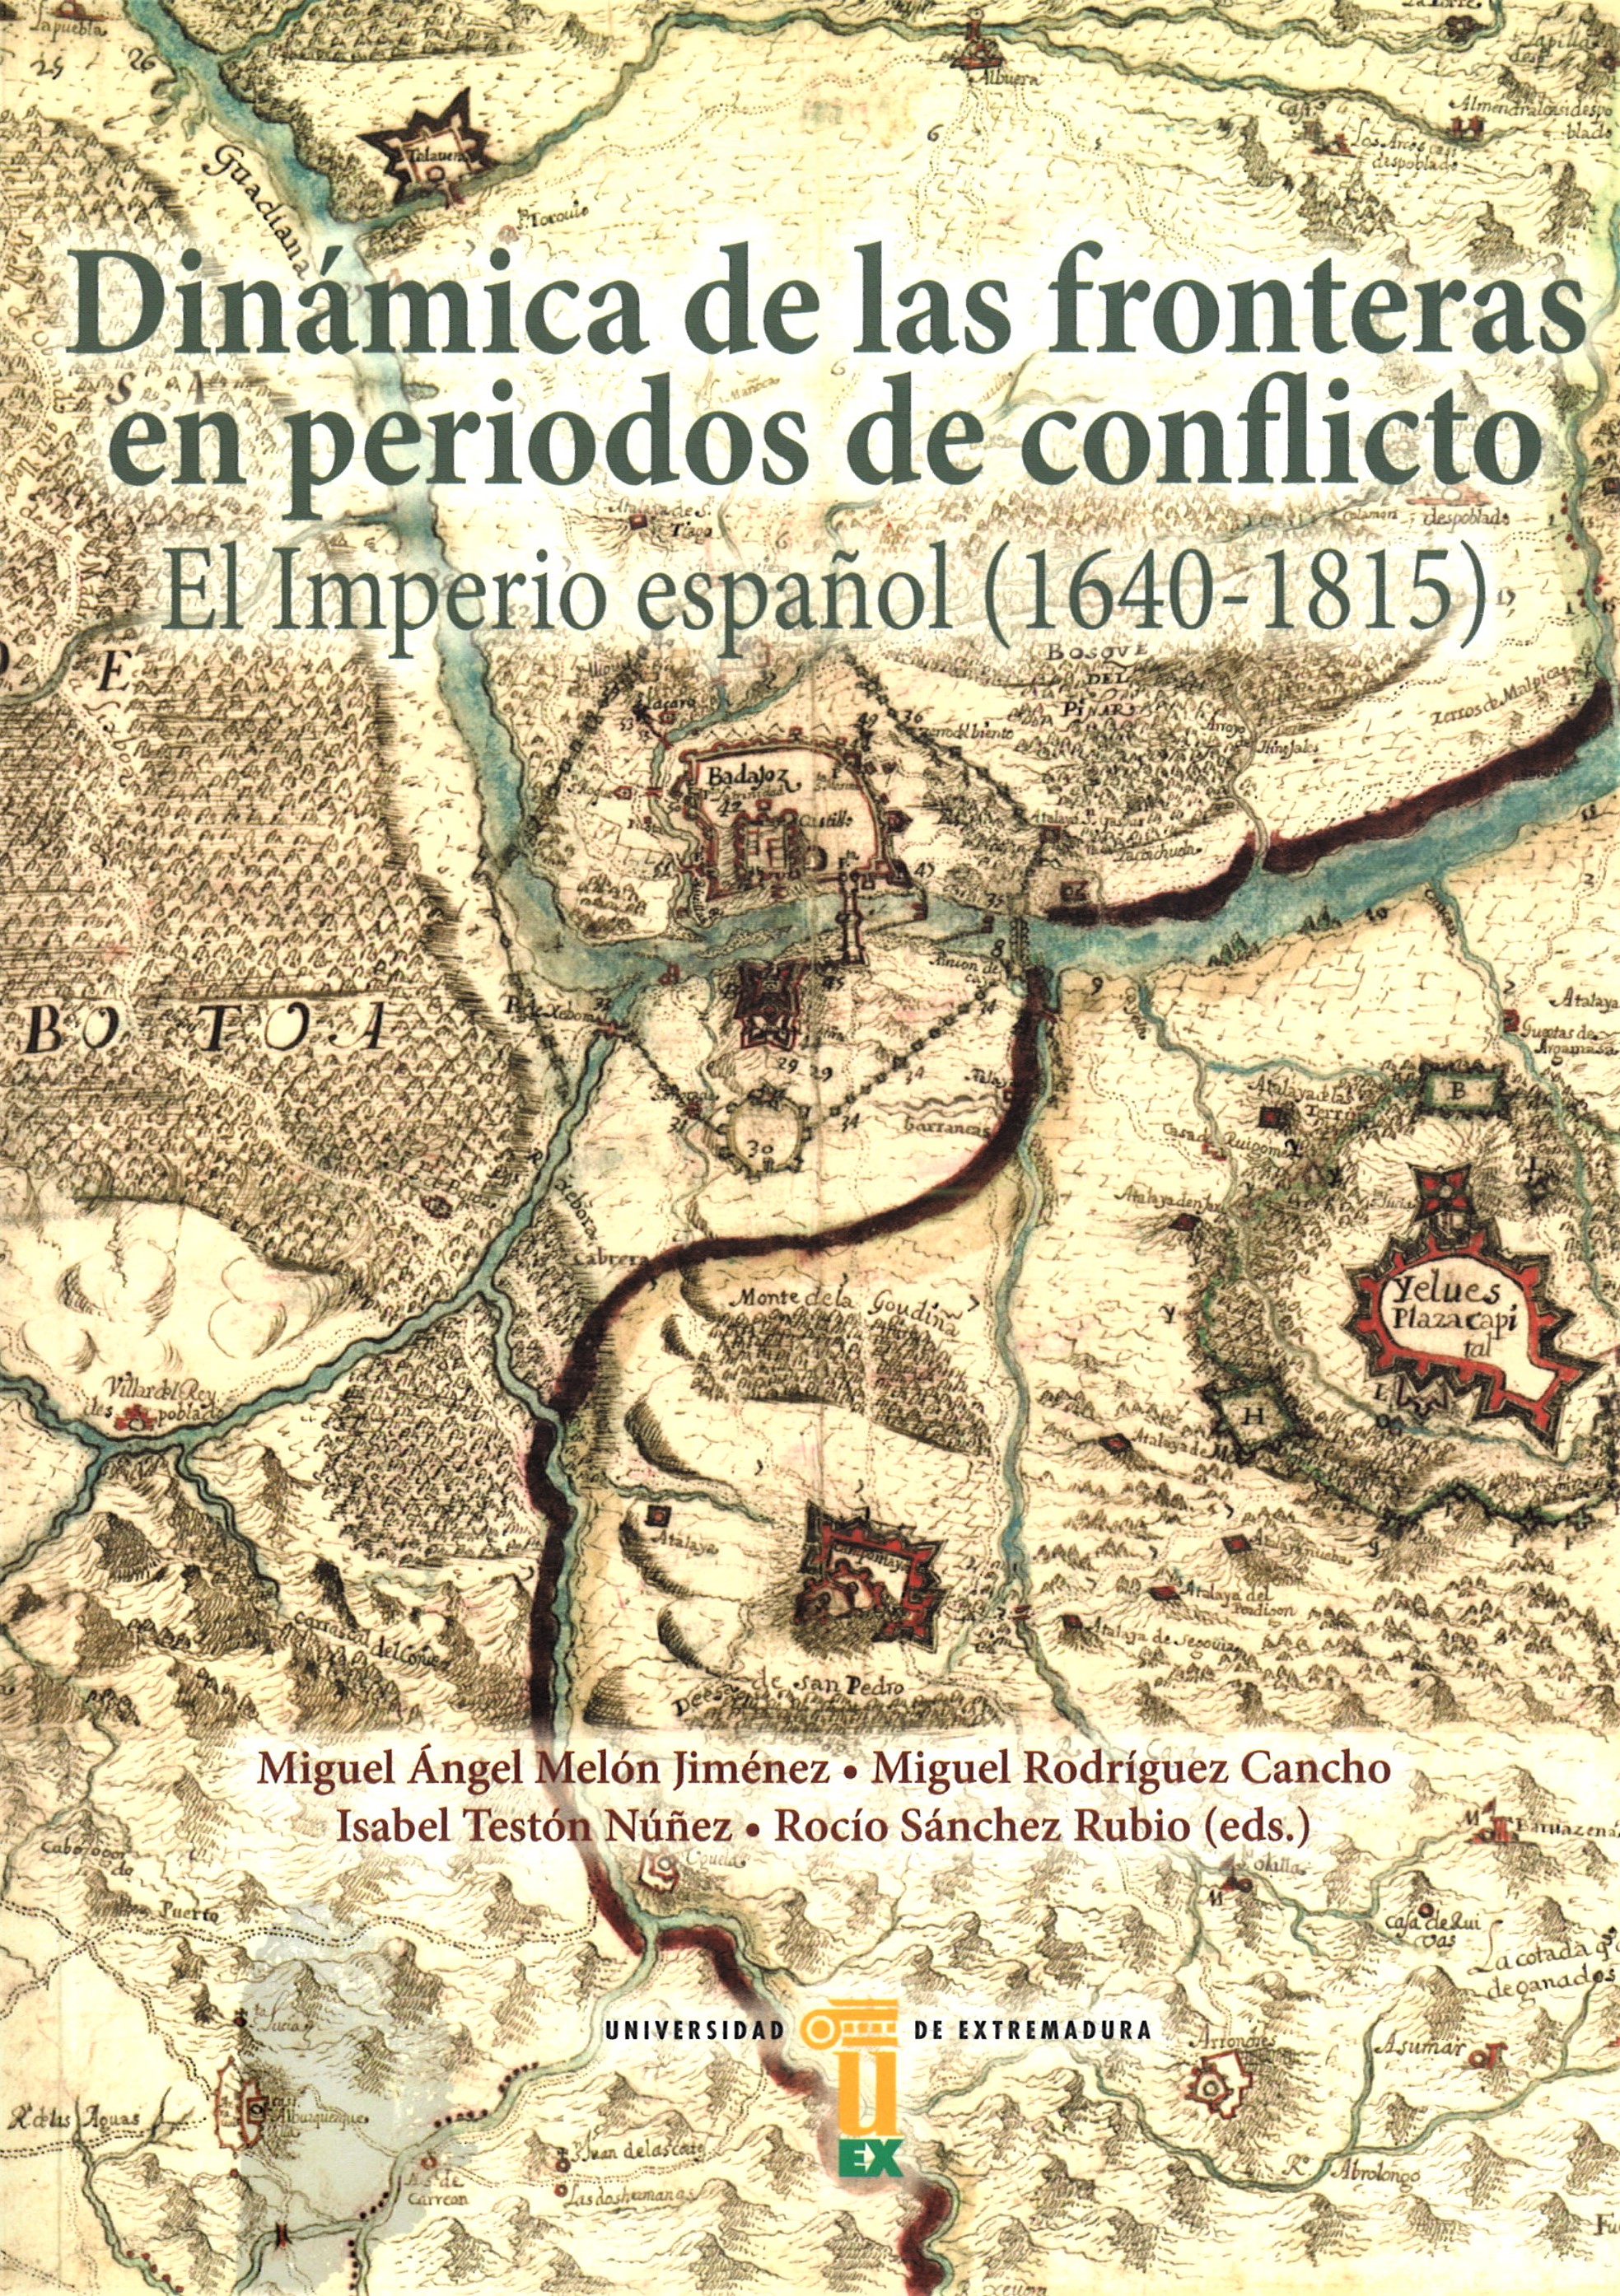 Imagen de portada del libro Dinámica de las fronteras en periodo de conflictos